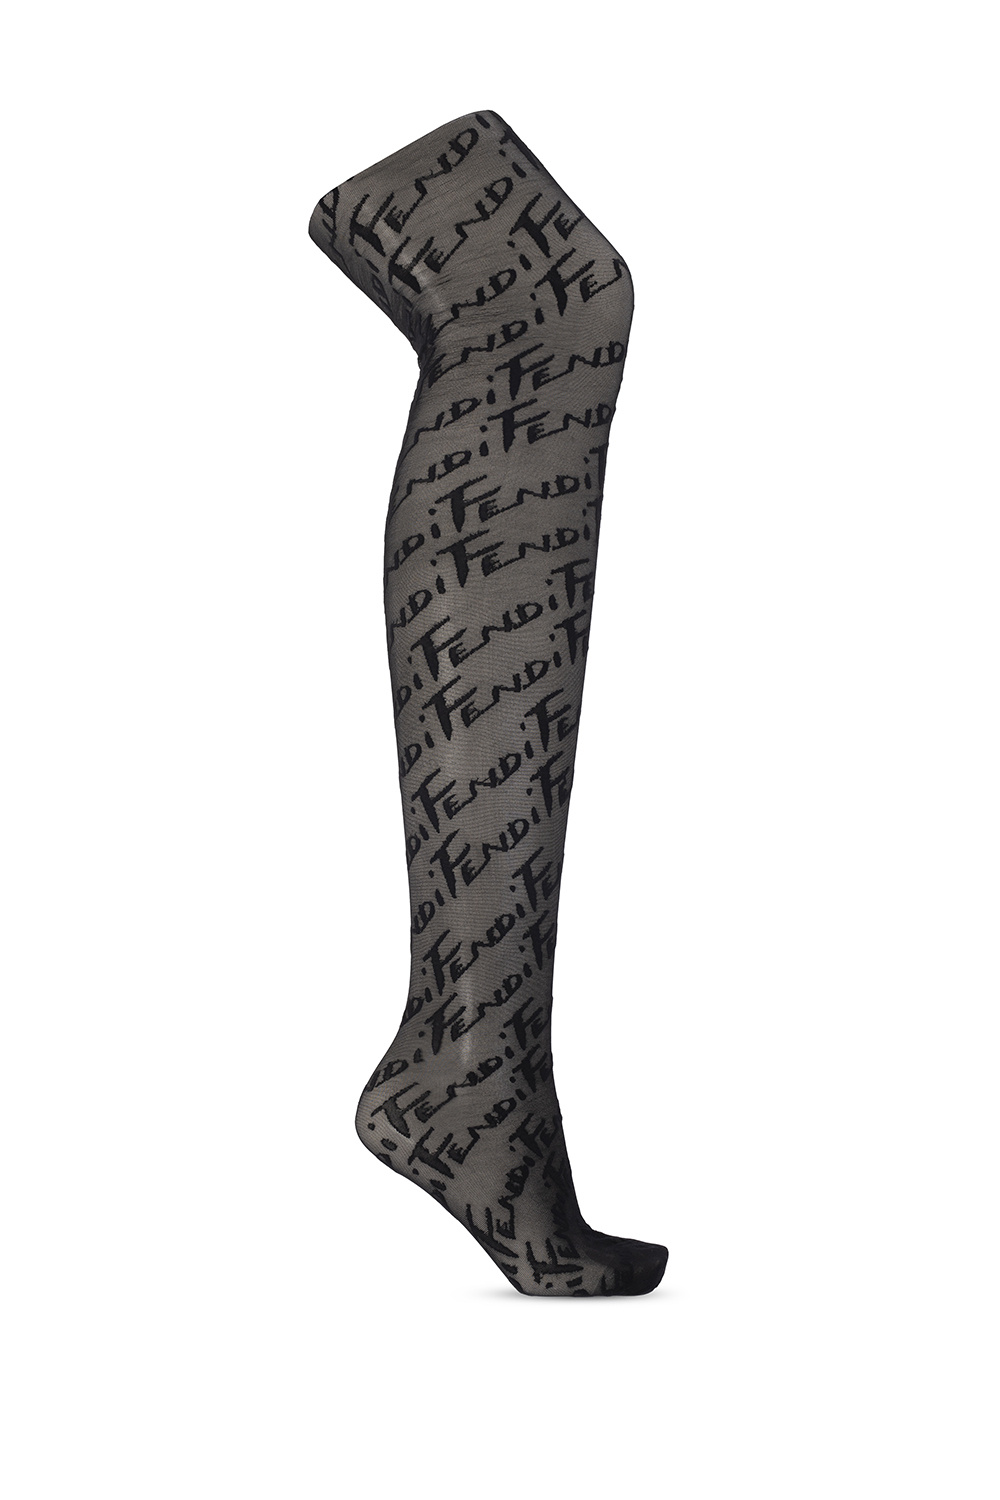 Fendi - Fendi FF motif tights stockings size medium on Designer Wardrobe